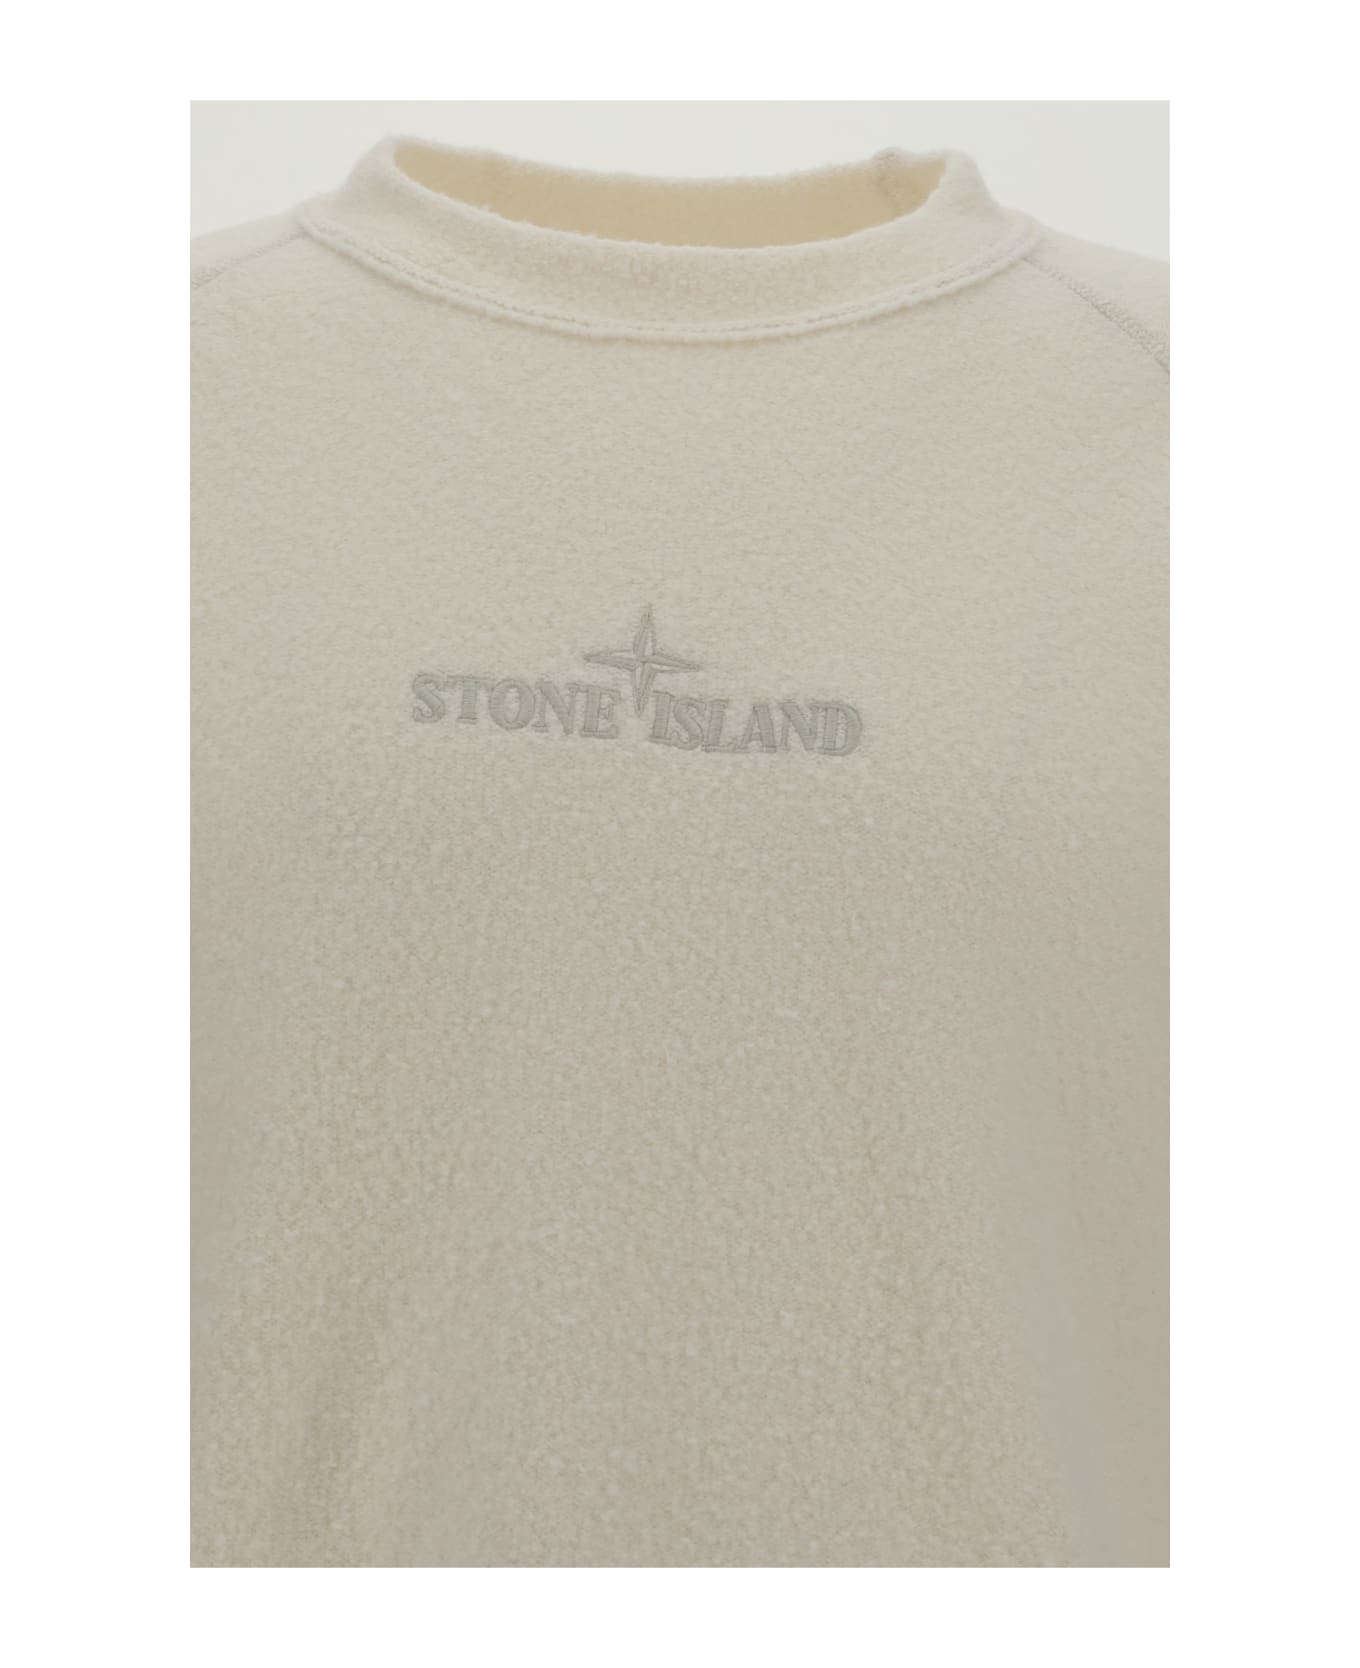 Stone Island Sweater - Bianco ニットウェア